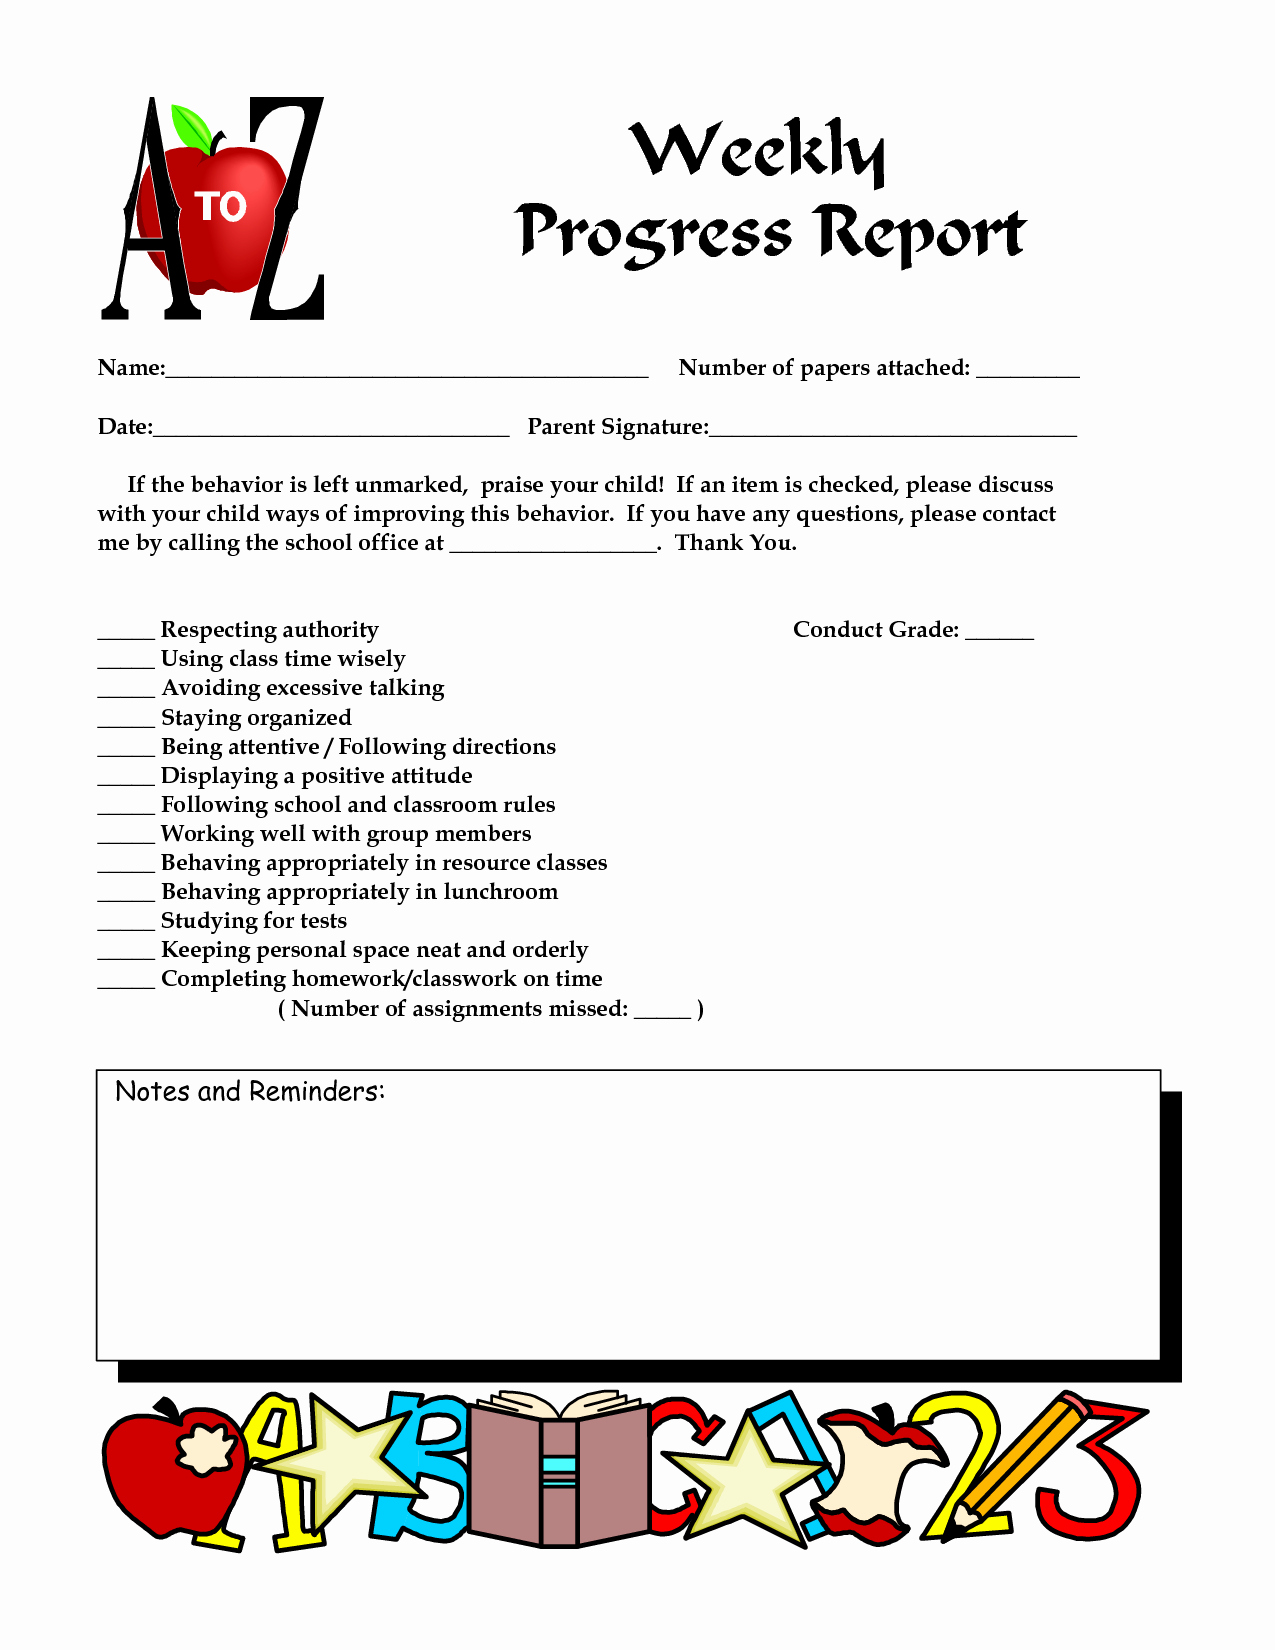 Elementary Progress Report Templates Inspirational Best S Of Weekly Progress Report Sample School